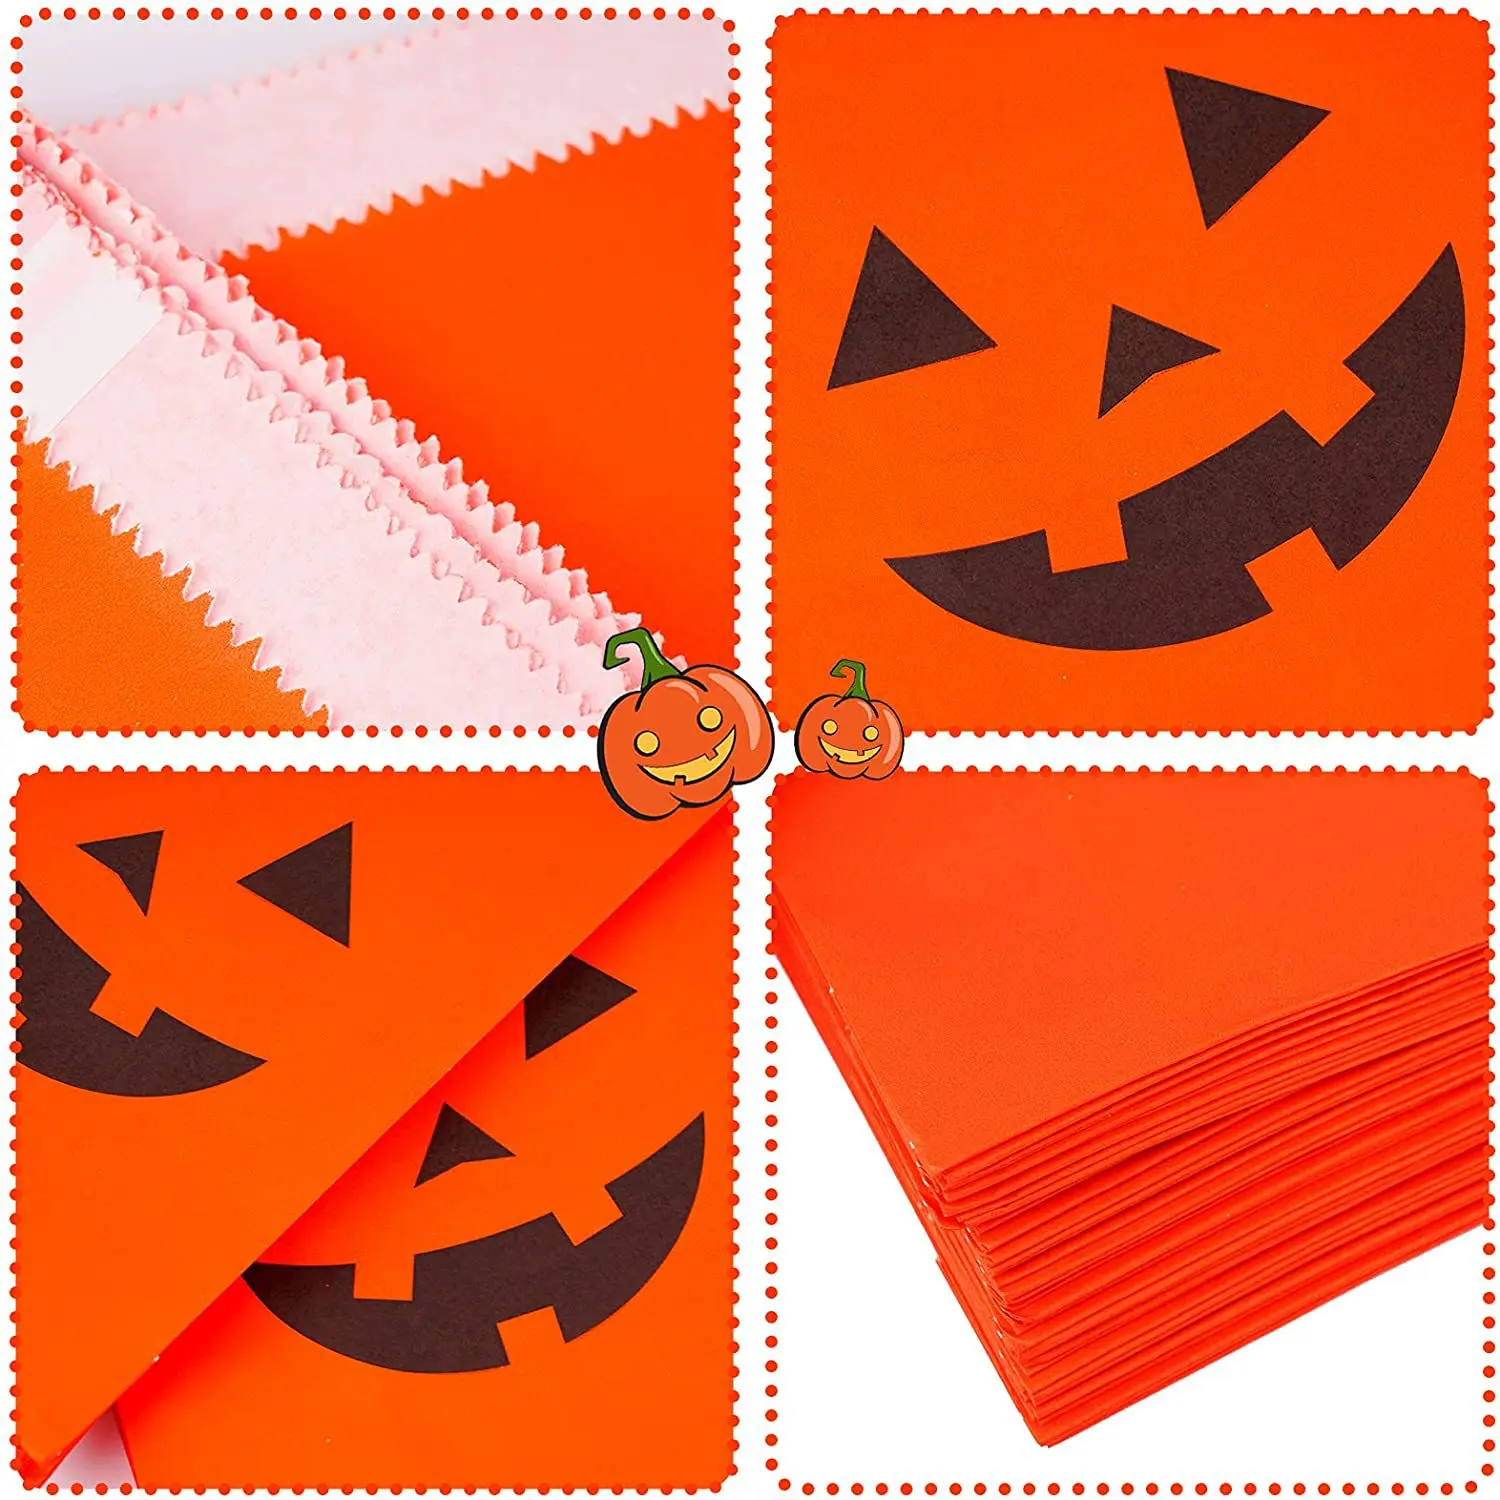 25pcs Halloween Papír Ajándék Táskák Tök Szellem Édesség Süti Táskák Gyerekeknek Ajándék Csomagolás Zsák Csokit vagy Csalunk Halloween Dekoráció - 4